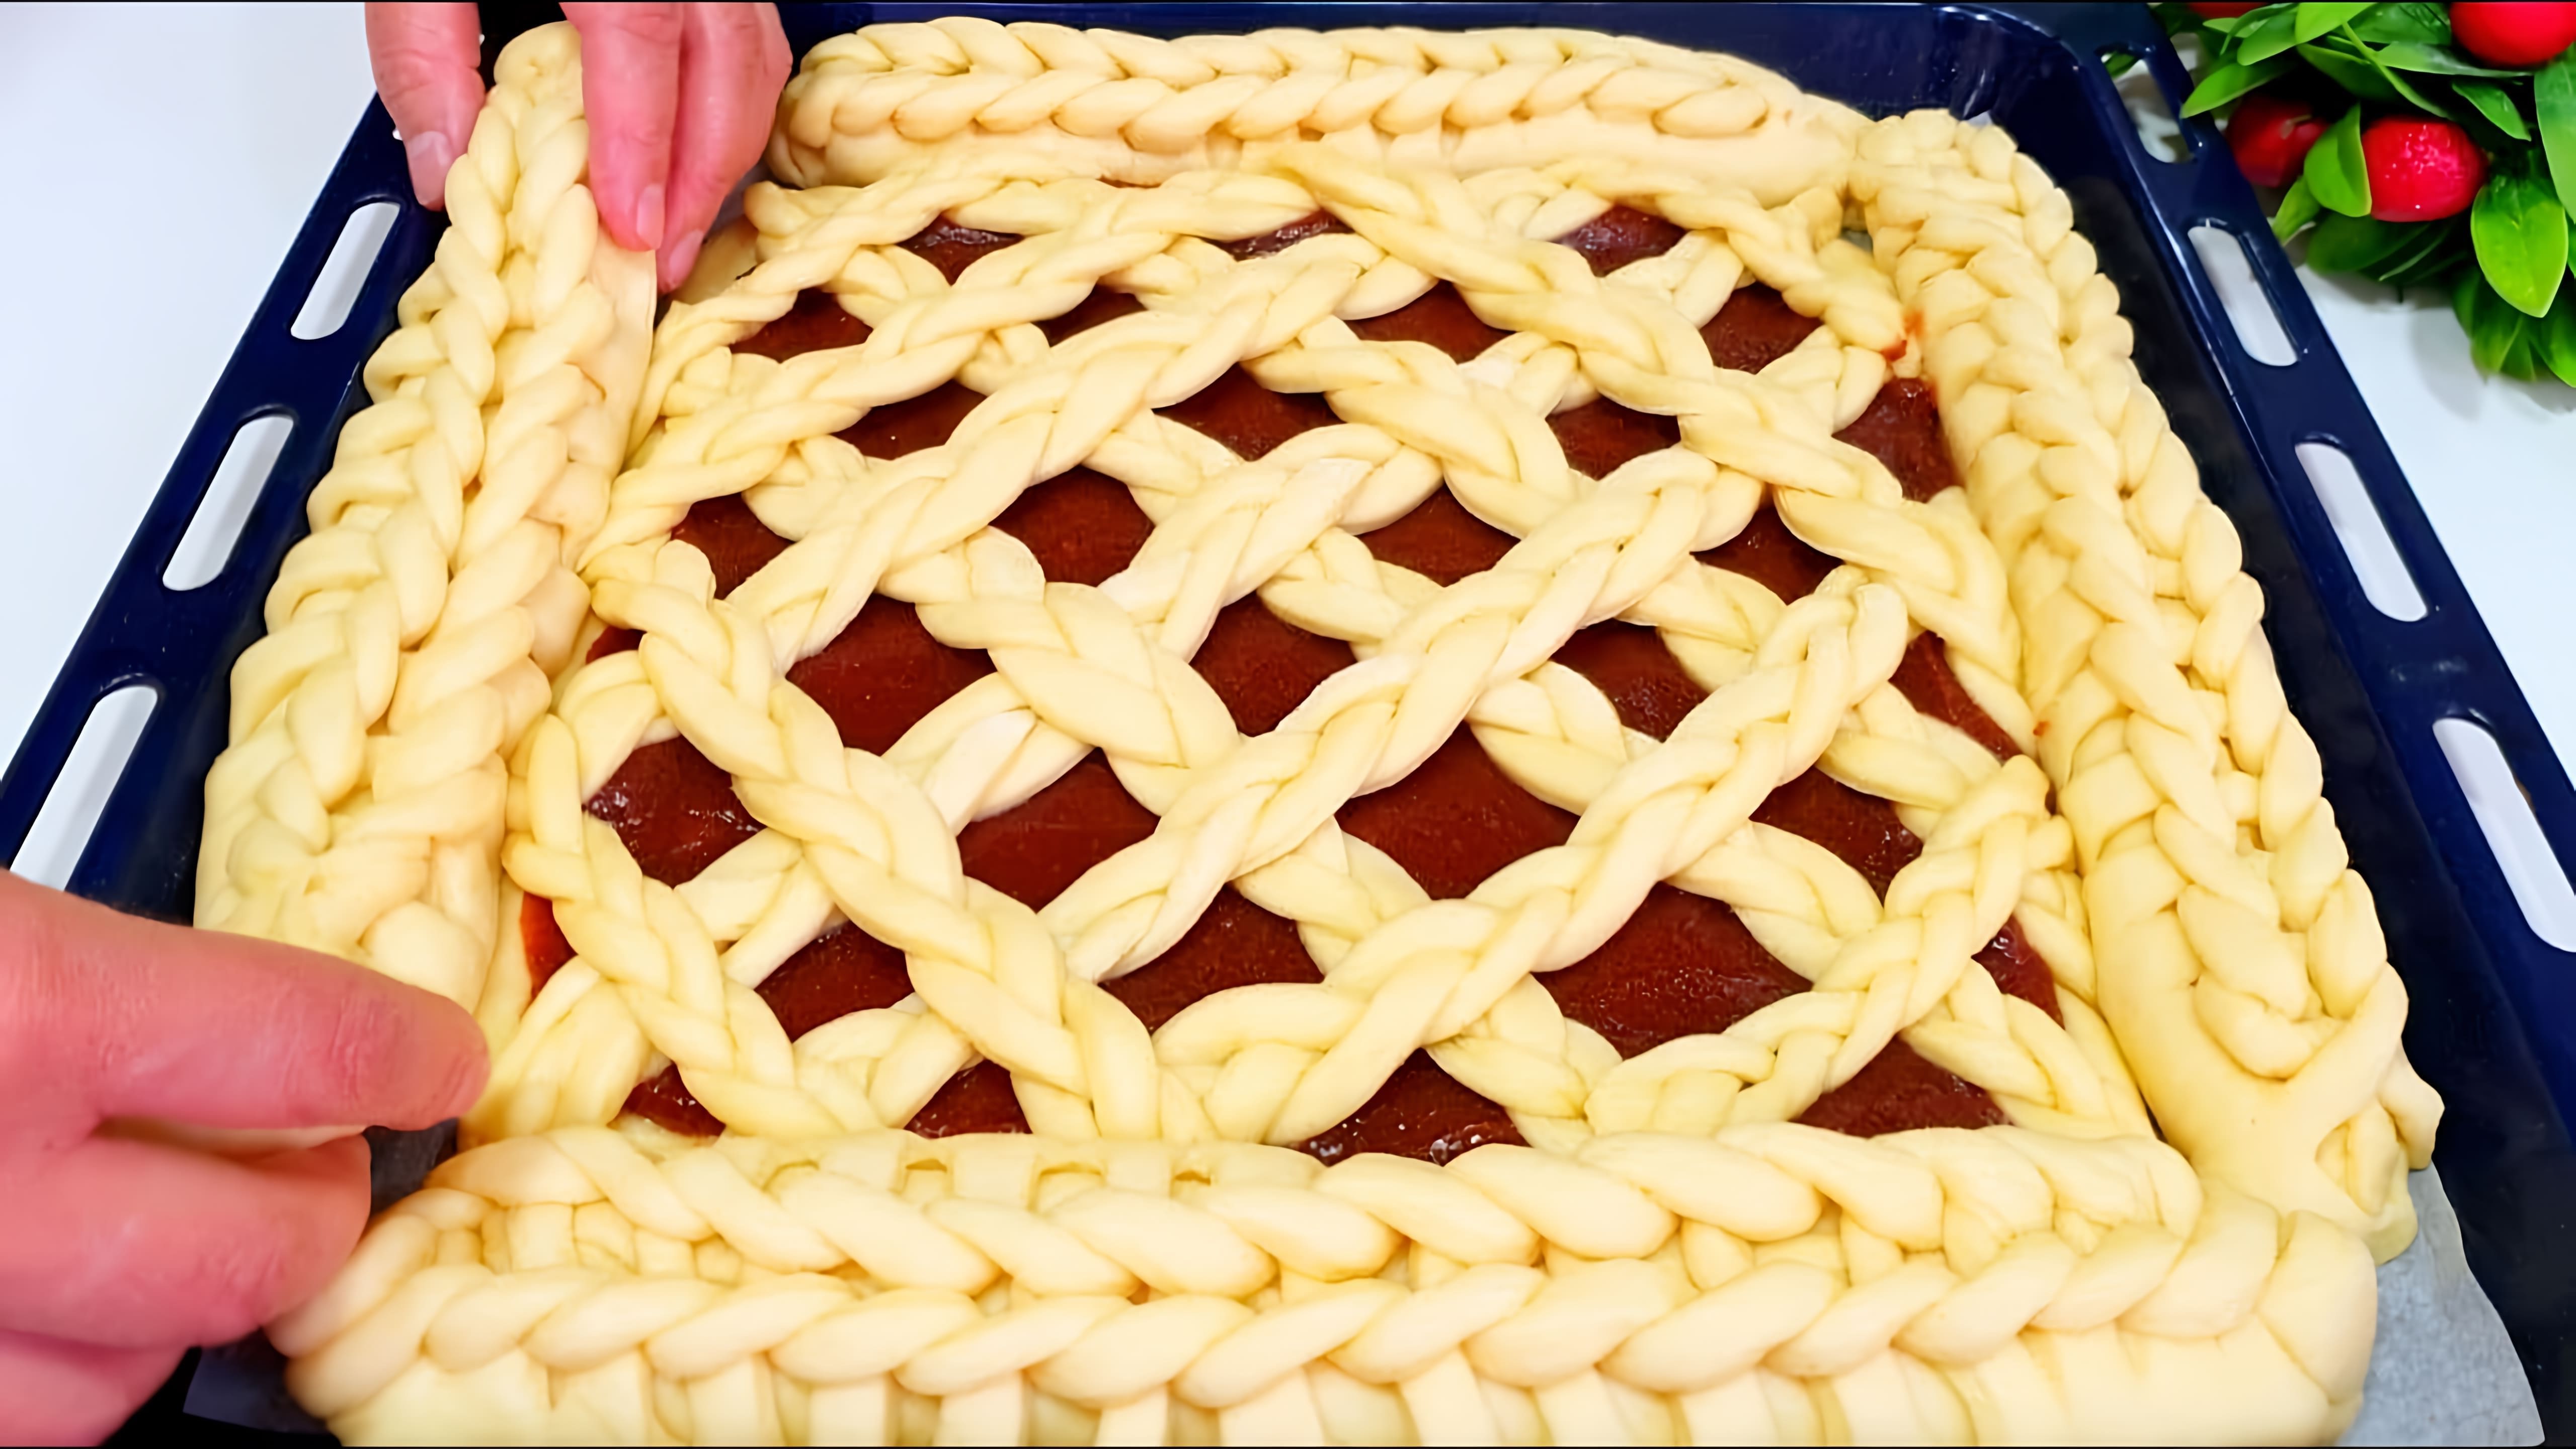 В этом видео демонстрируется процесс приготовления воздушного пирога для большой семьи